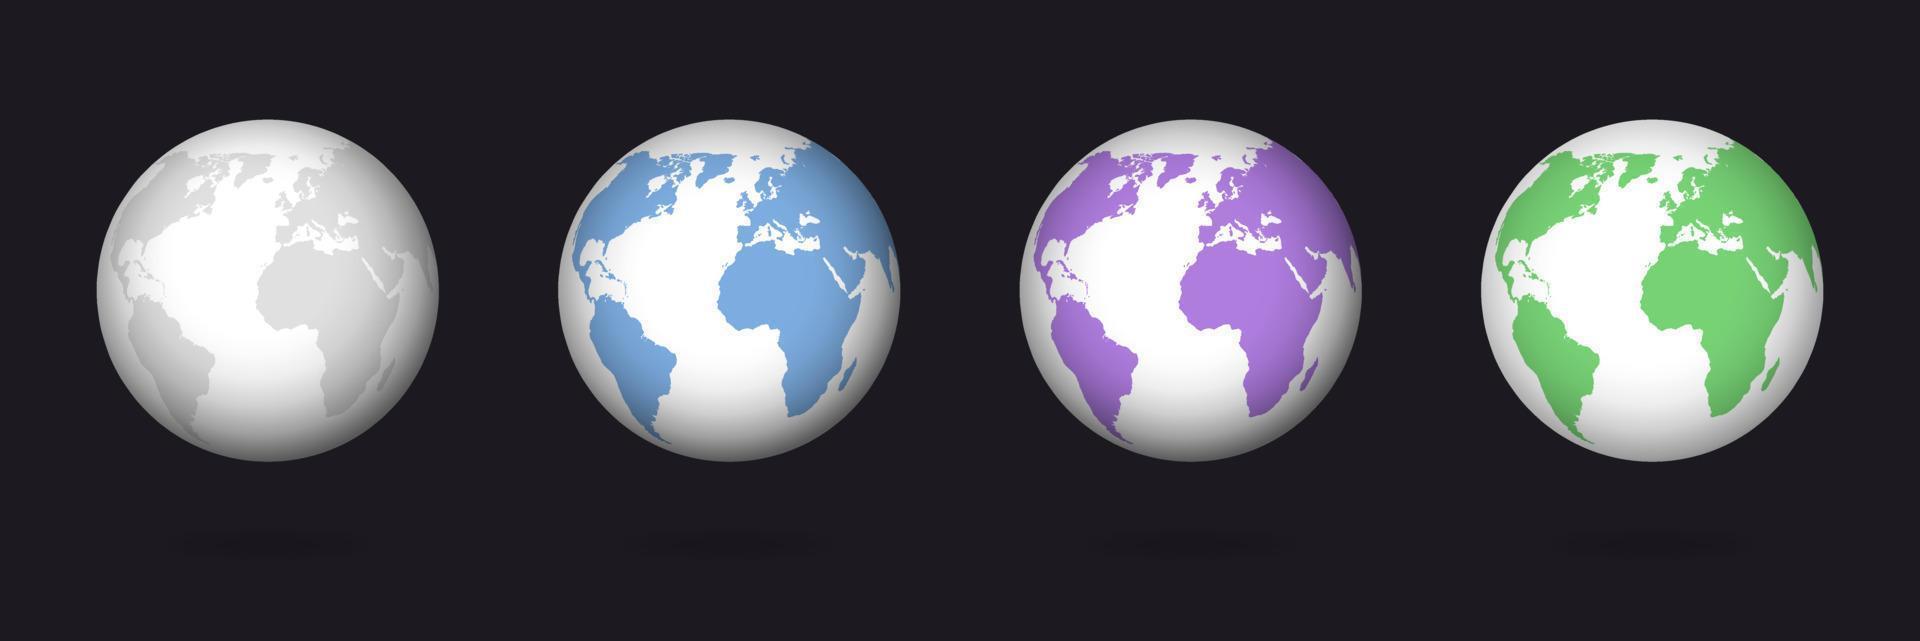 terra colore globo 3d. pianeta con diverso colore ambientazione a partire dal monocromatico per verde blu acqua continenti. vettore